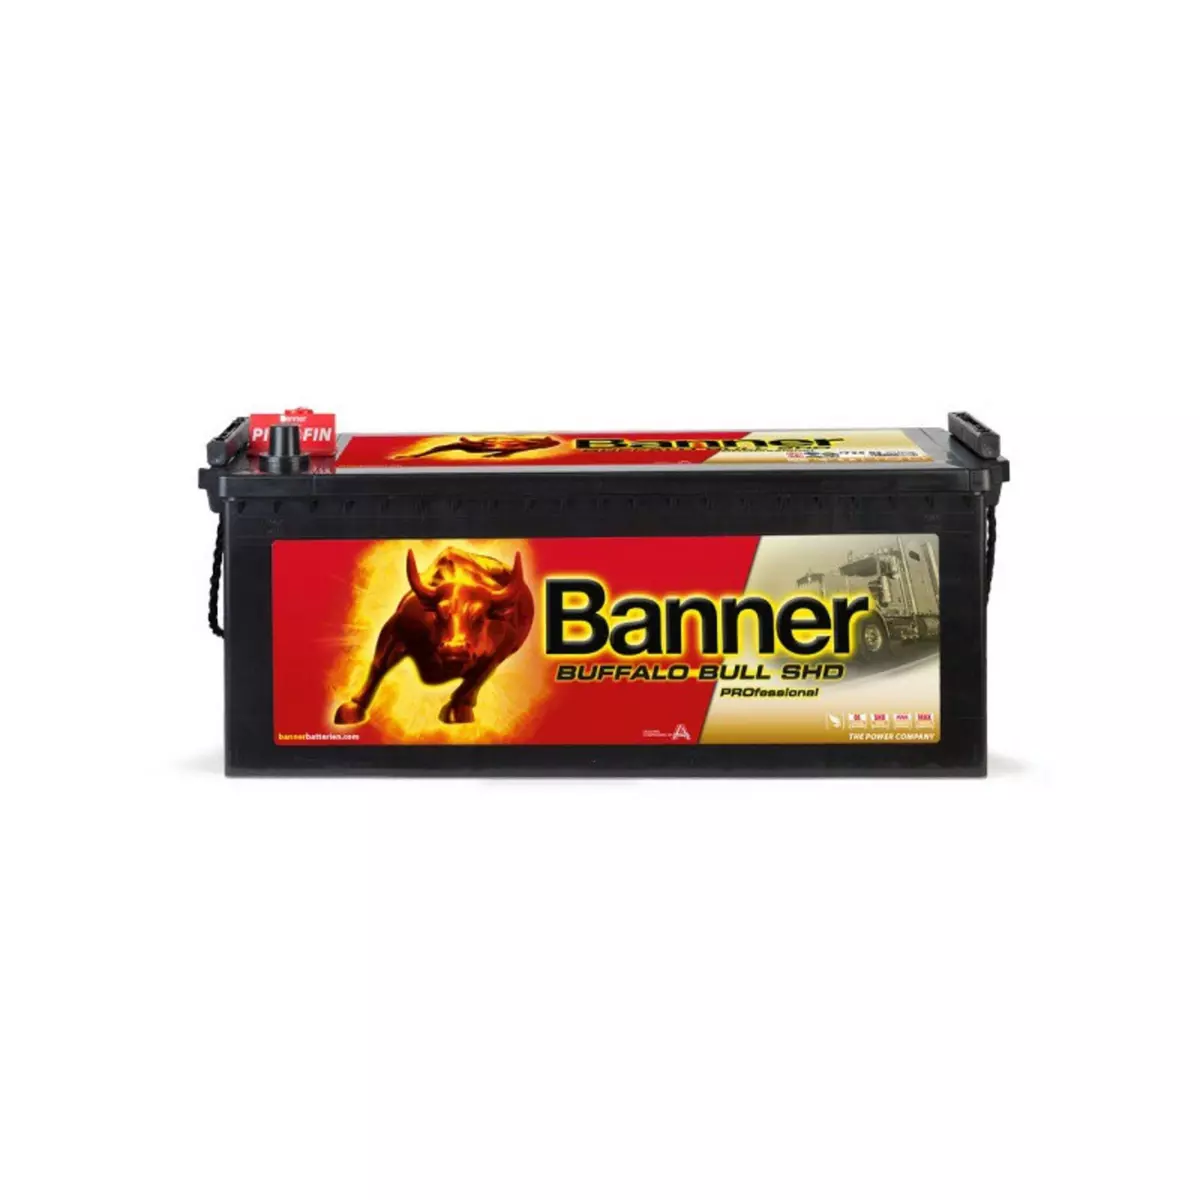 BANNER Batterie Banner Buffalo Bull SHD PRO 72503 12v 225ah 1150A